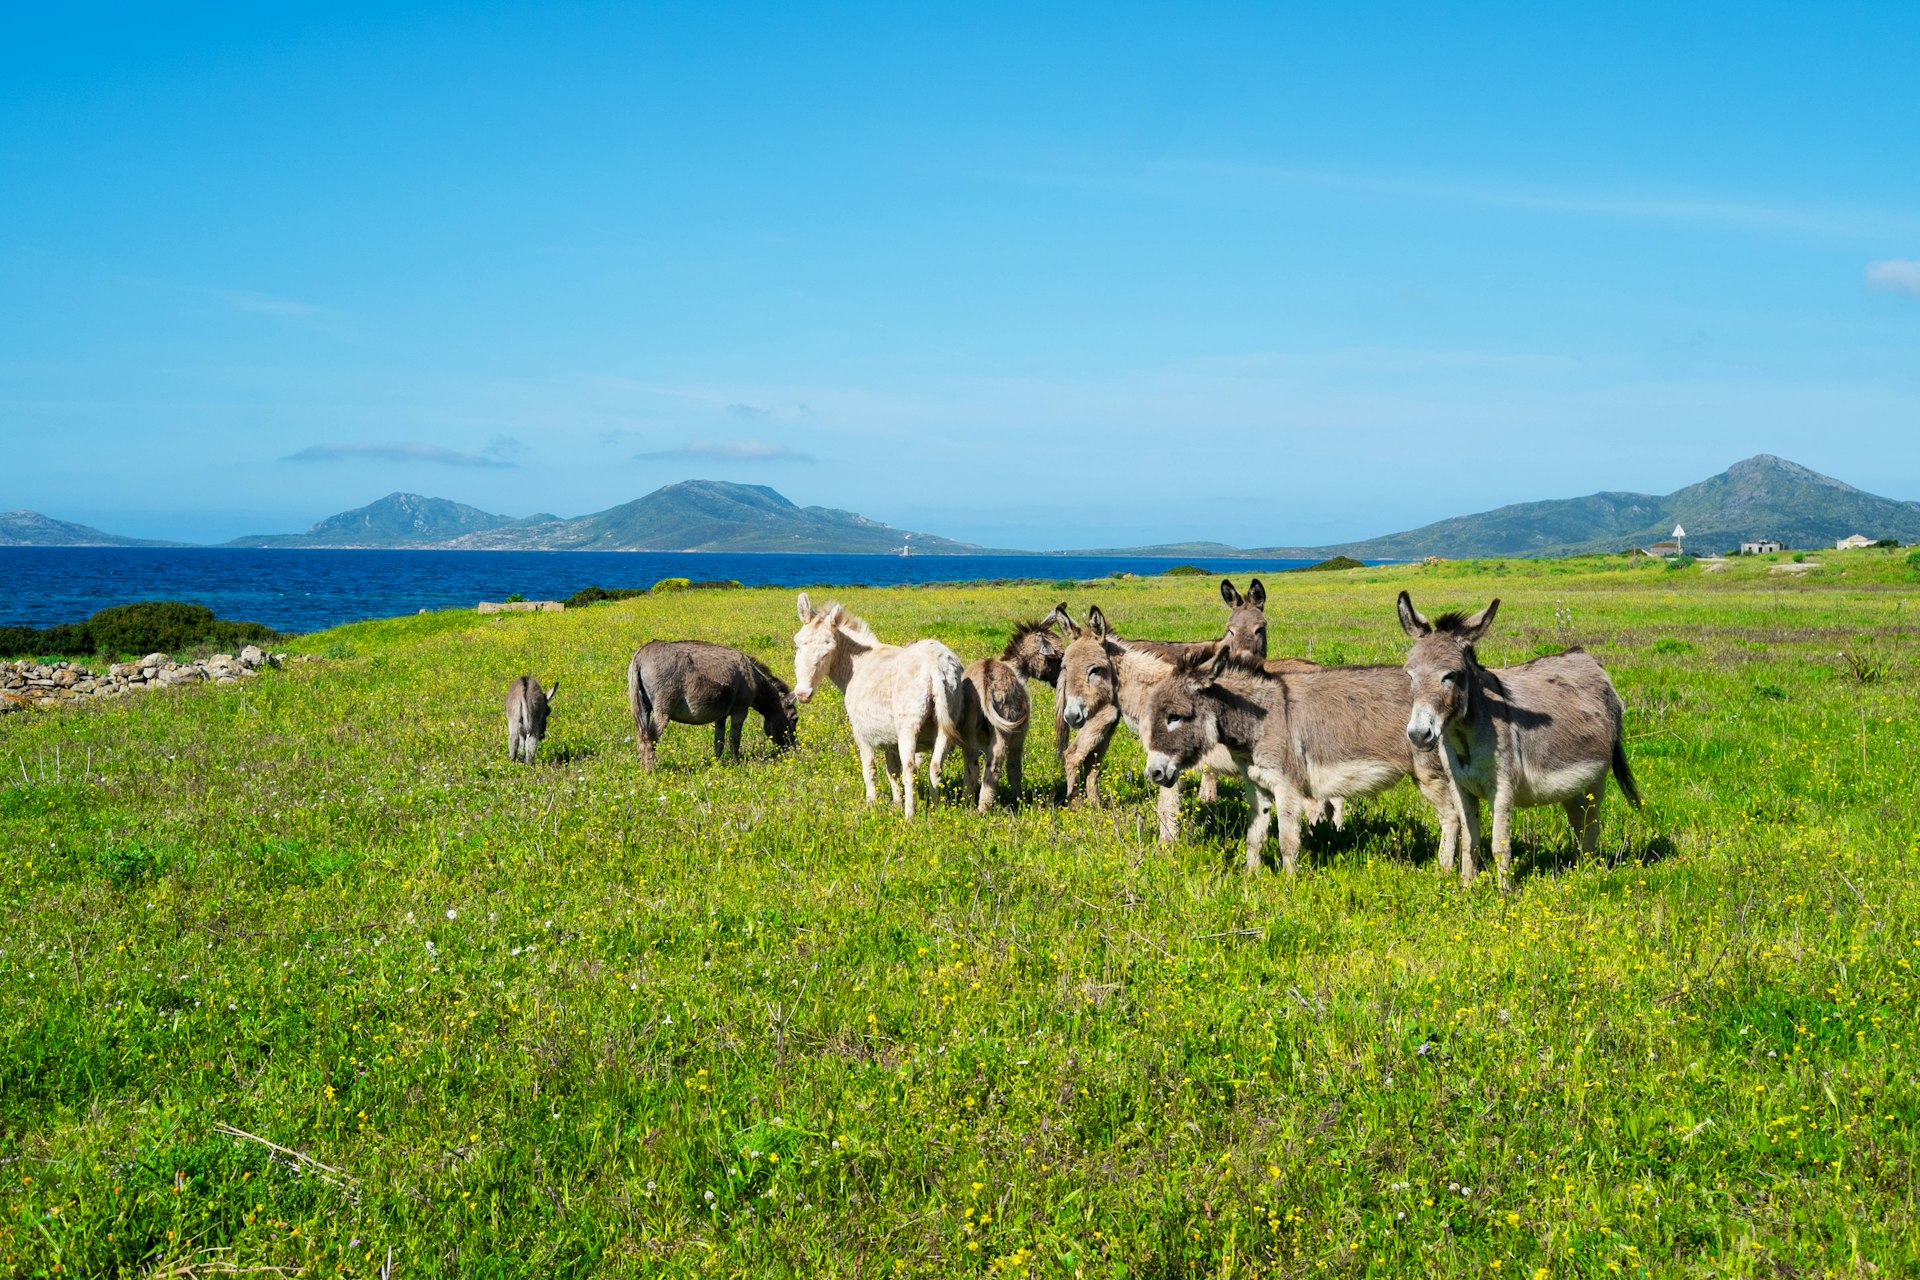 Sardinian donkeys in Asinara island, Sardinia, Italy